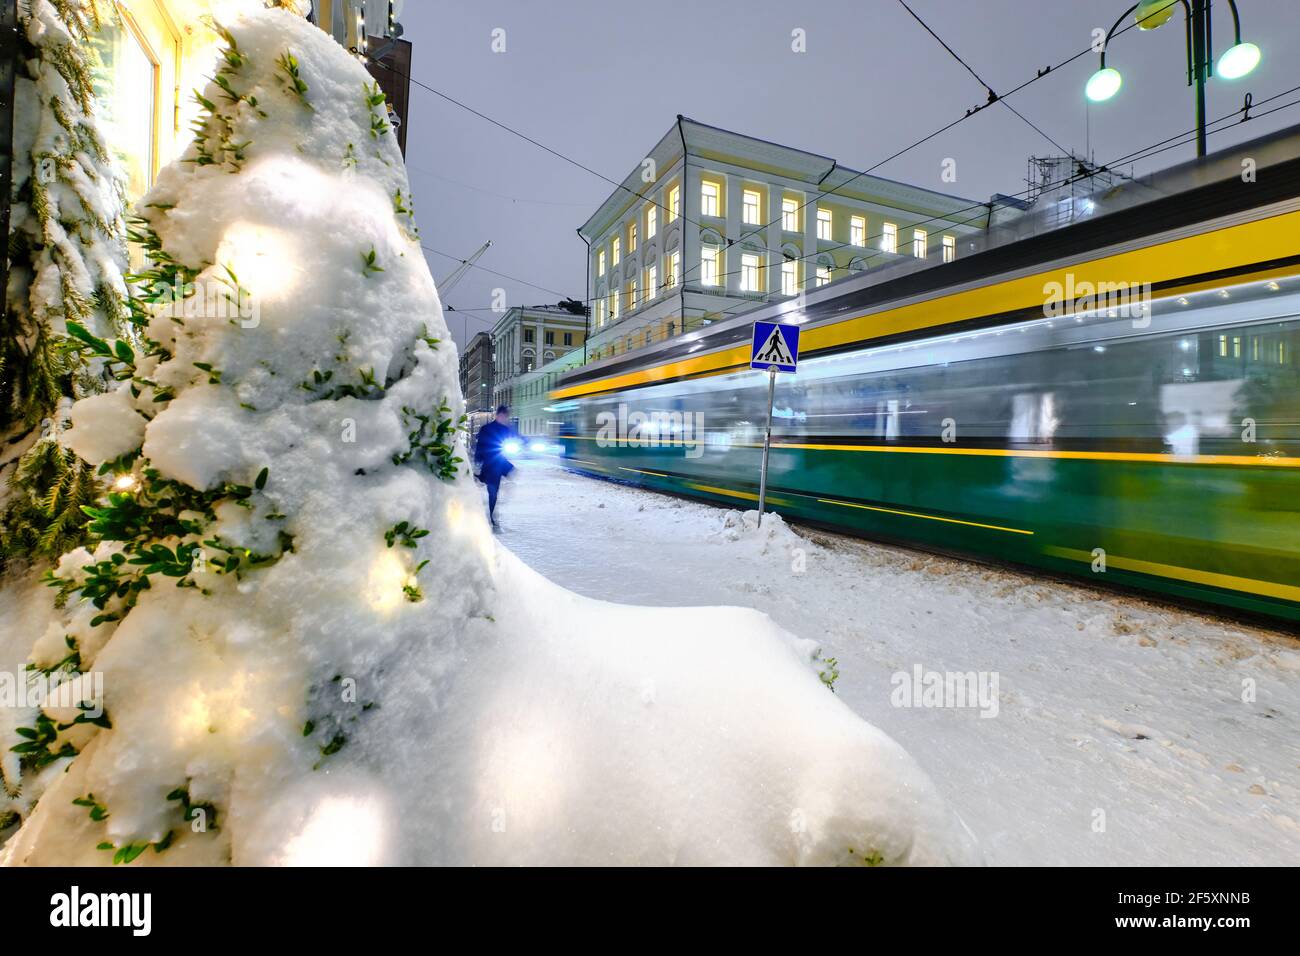 Calle Aleksanterinkatu durante la fuerte tormenta de nieve. El tranvía se mueve en la calle. Helsinki, Finlandia. Foto de stock